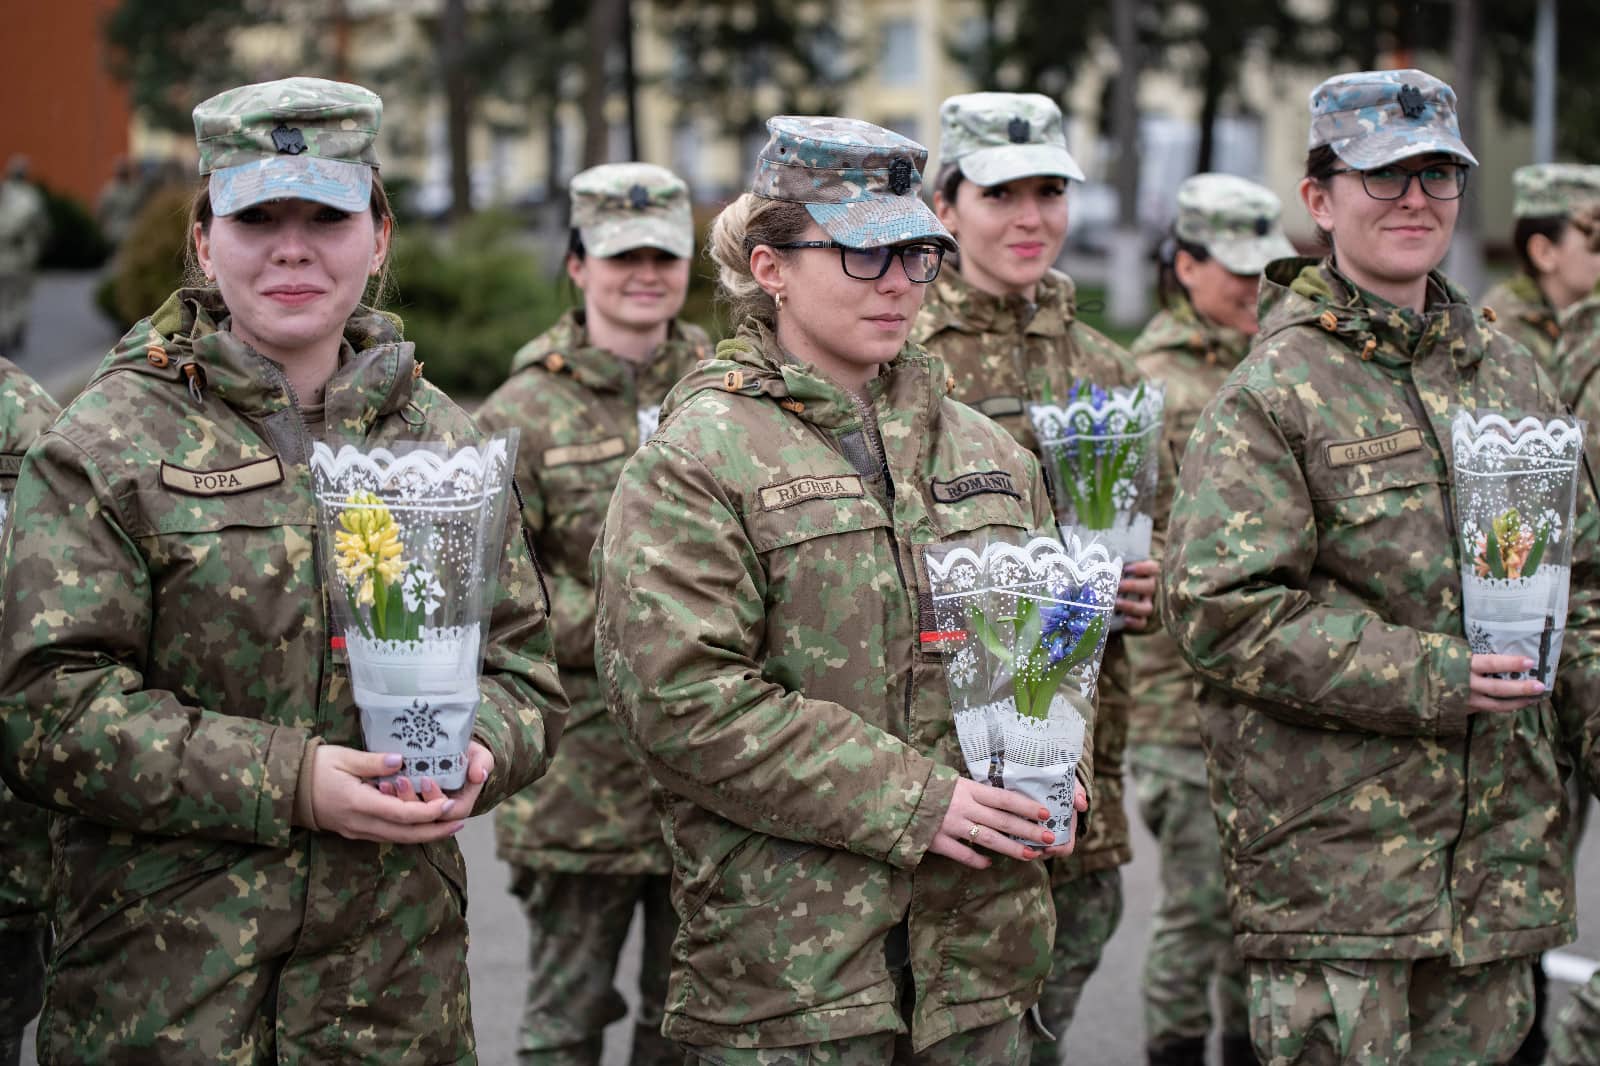 ziua internațională a femeii sărbătorită la academia forțelor terestre din sibiu - spectacol de muzică și flori pentru domnișoare